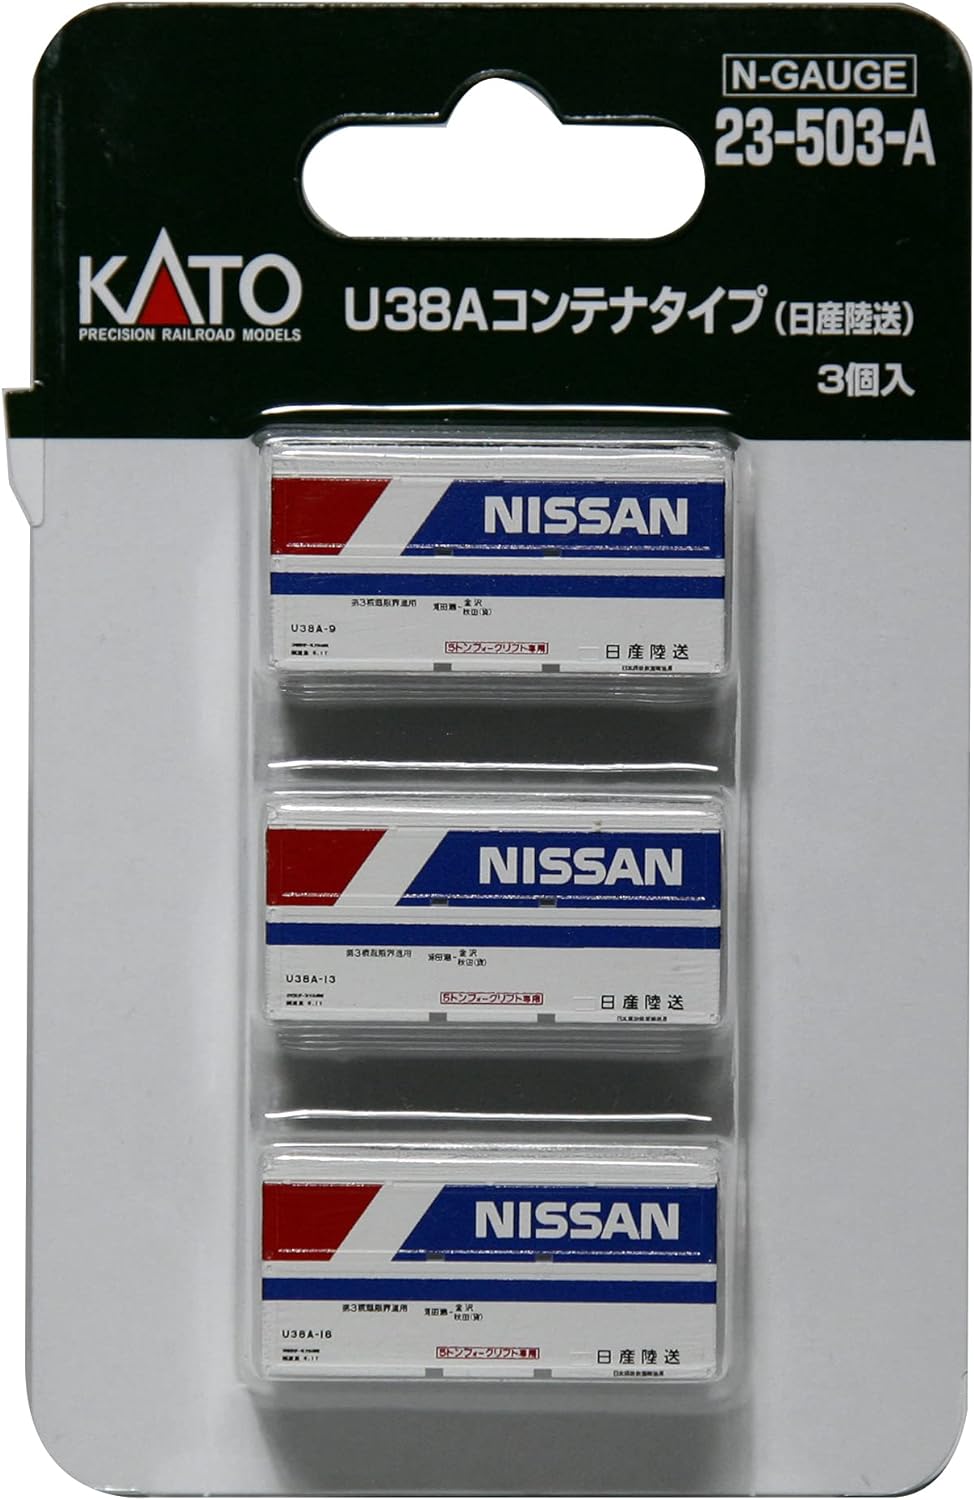 Kato 23-503-A U38A Container (Nissan Rikusou) 3 pcs./set  N Scale